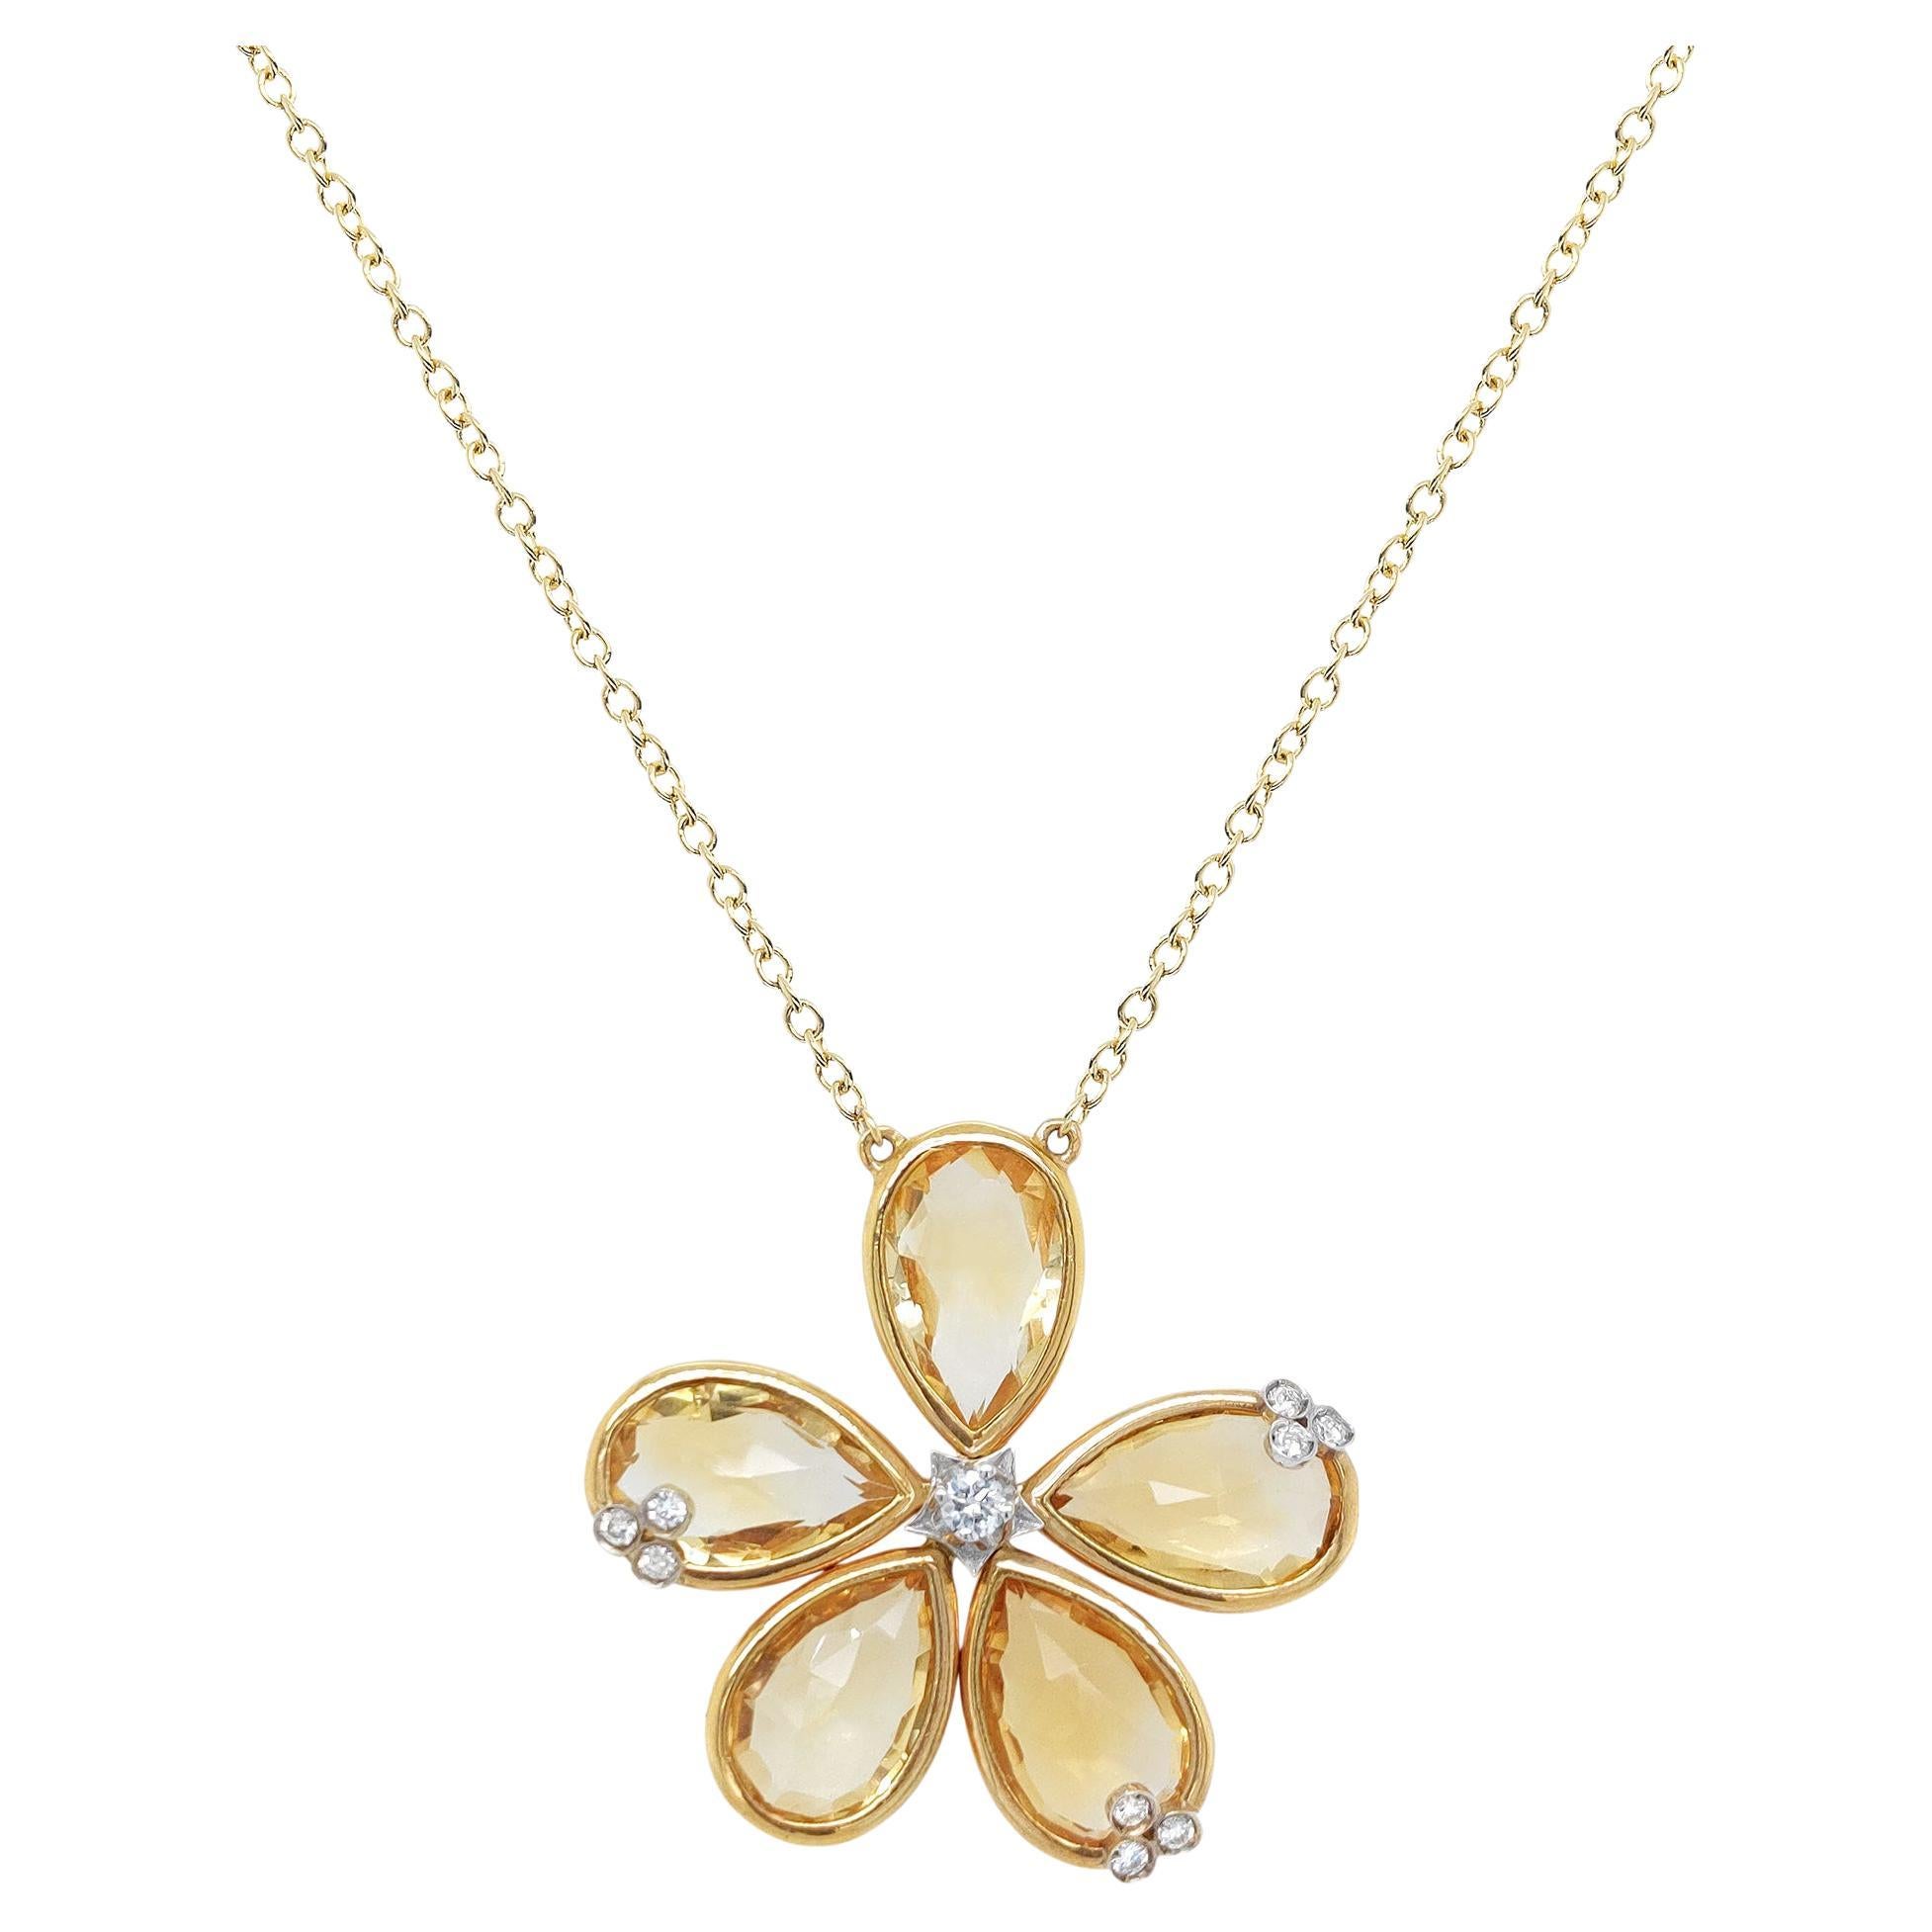 Collier fleur en or jaune 18 carats, quartz citrine et diamants